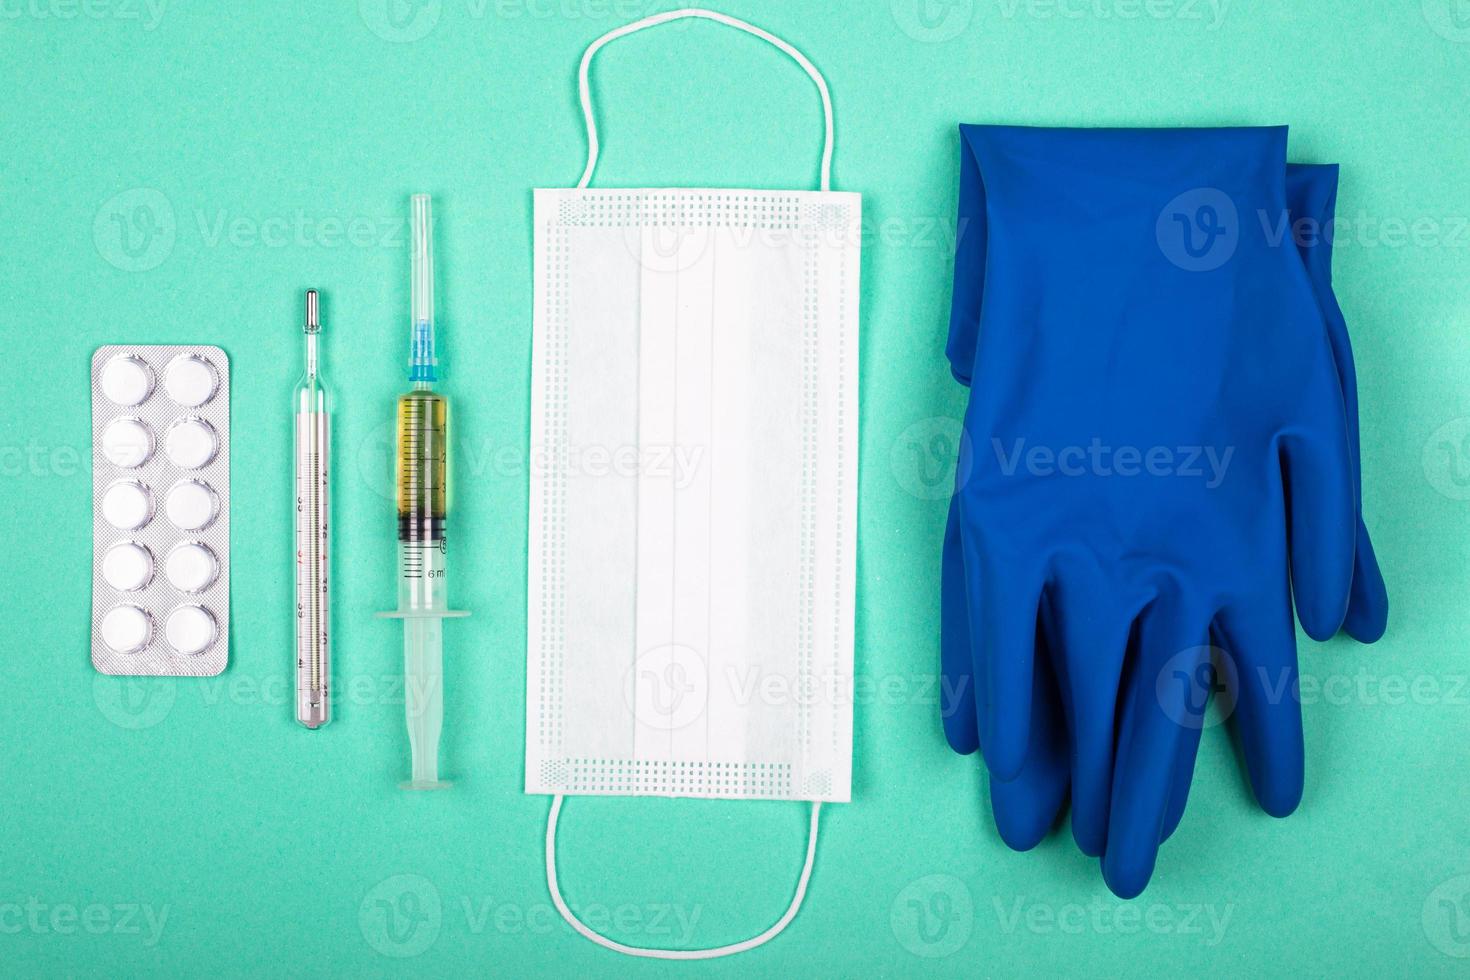 medische producten voor bescherming tegen coronavirus pandemie covid-19 op blauwgroene achtergrond foto